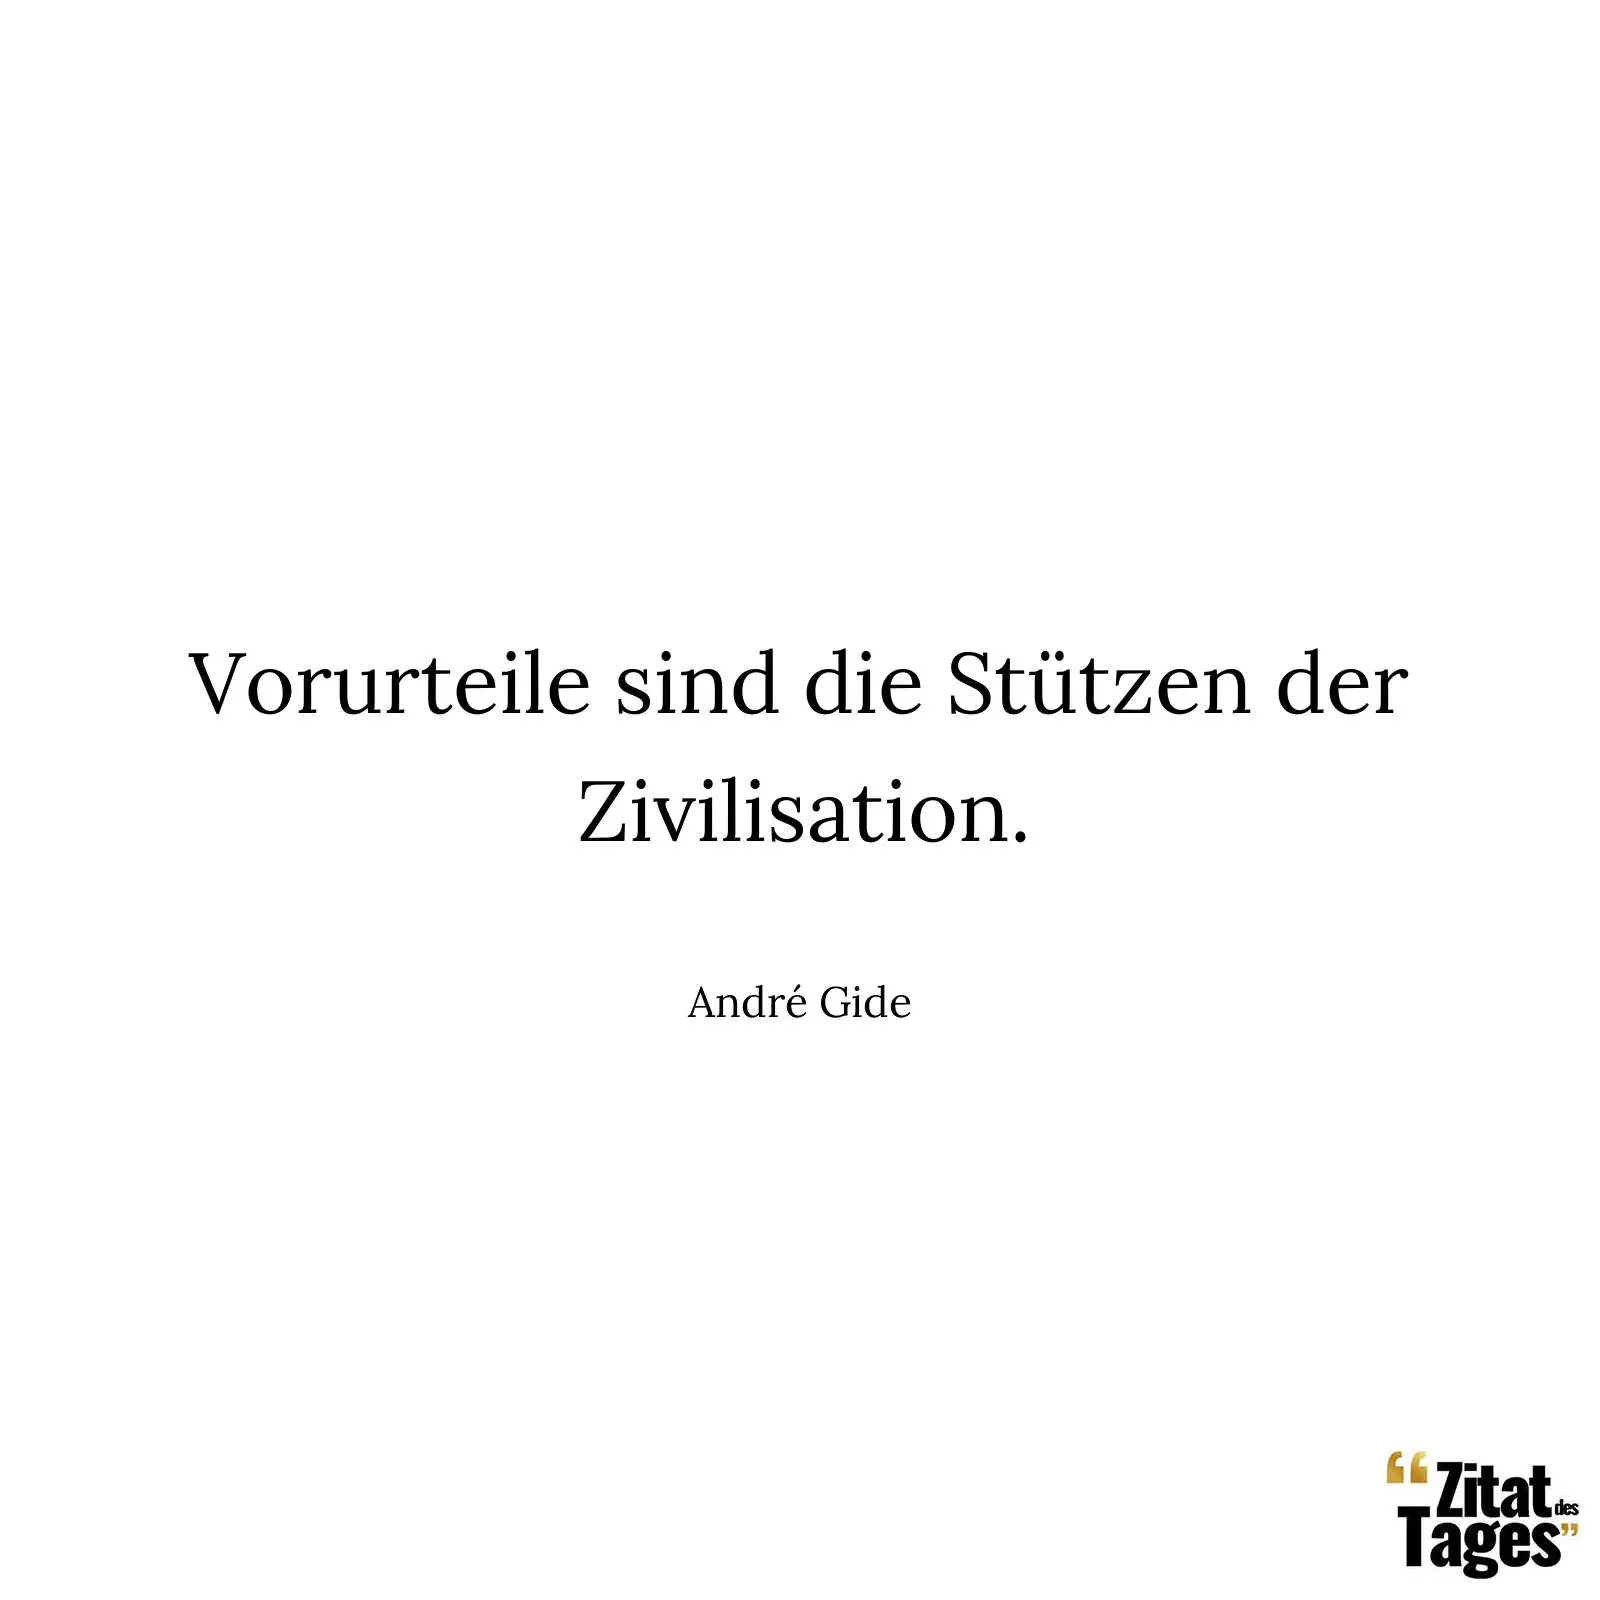 Vorurteile sind die Stützen der Zivilisation. - André Gide